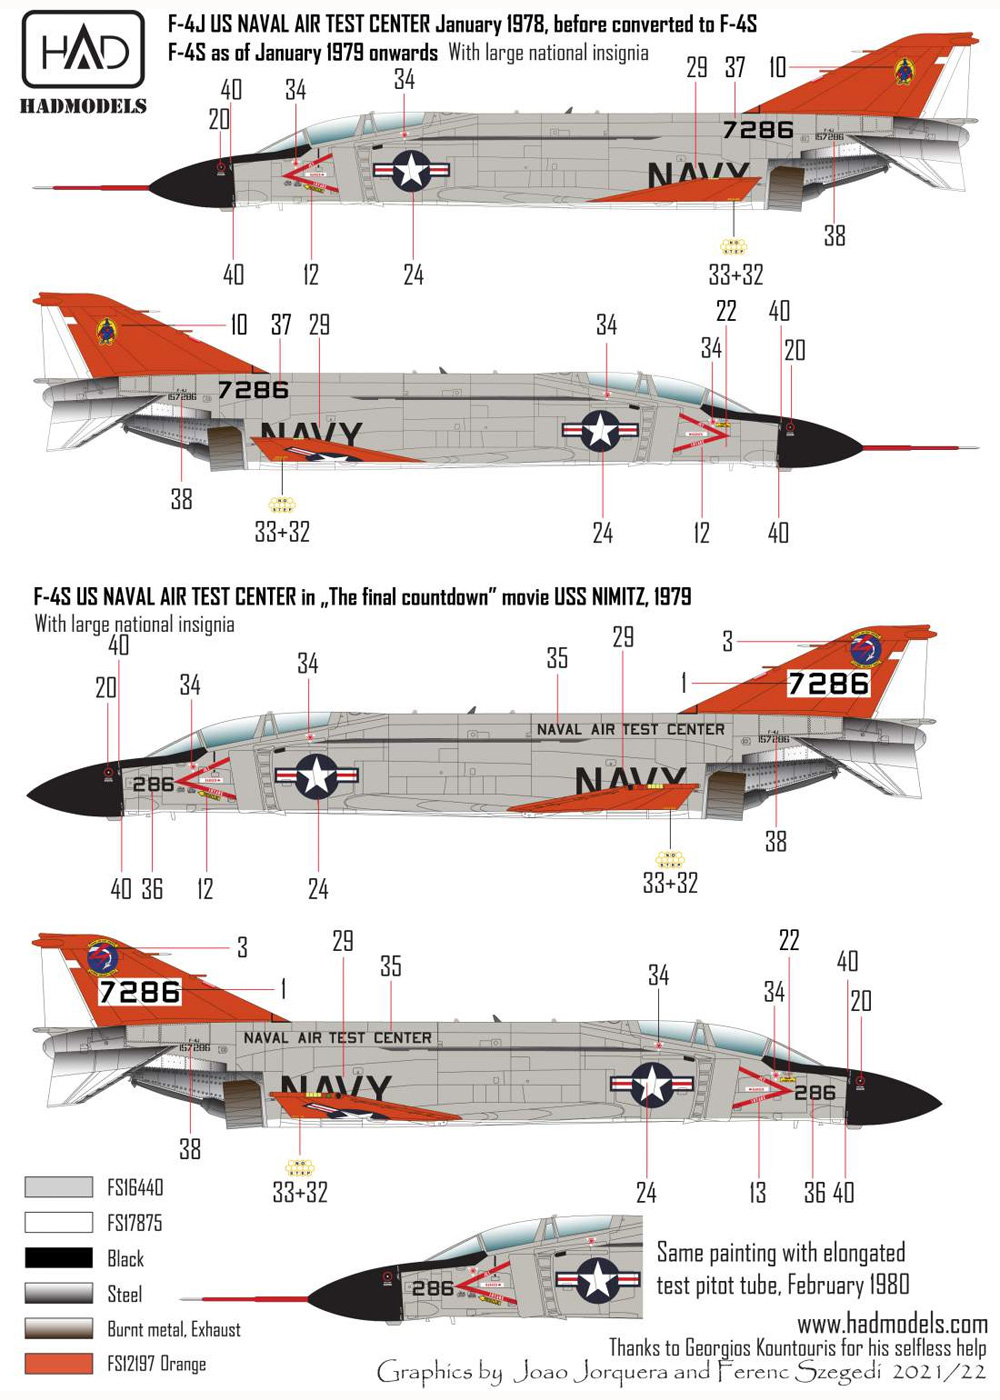 F-4S/J ファントム 2 海軍航空試験センター ファイナル・カウントダウン デカール デカール (HAD MODELS 1/48 デカール No.48255) 商品画像_2